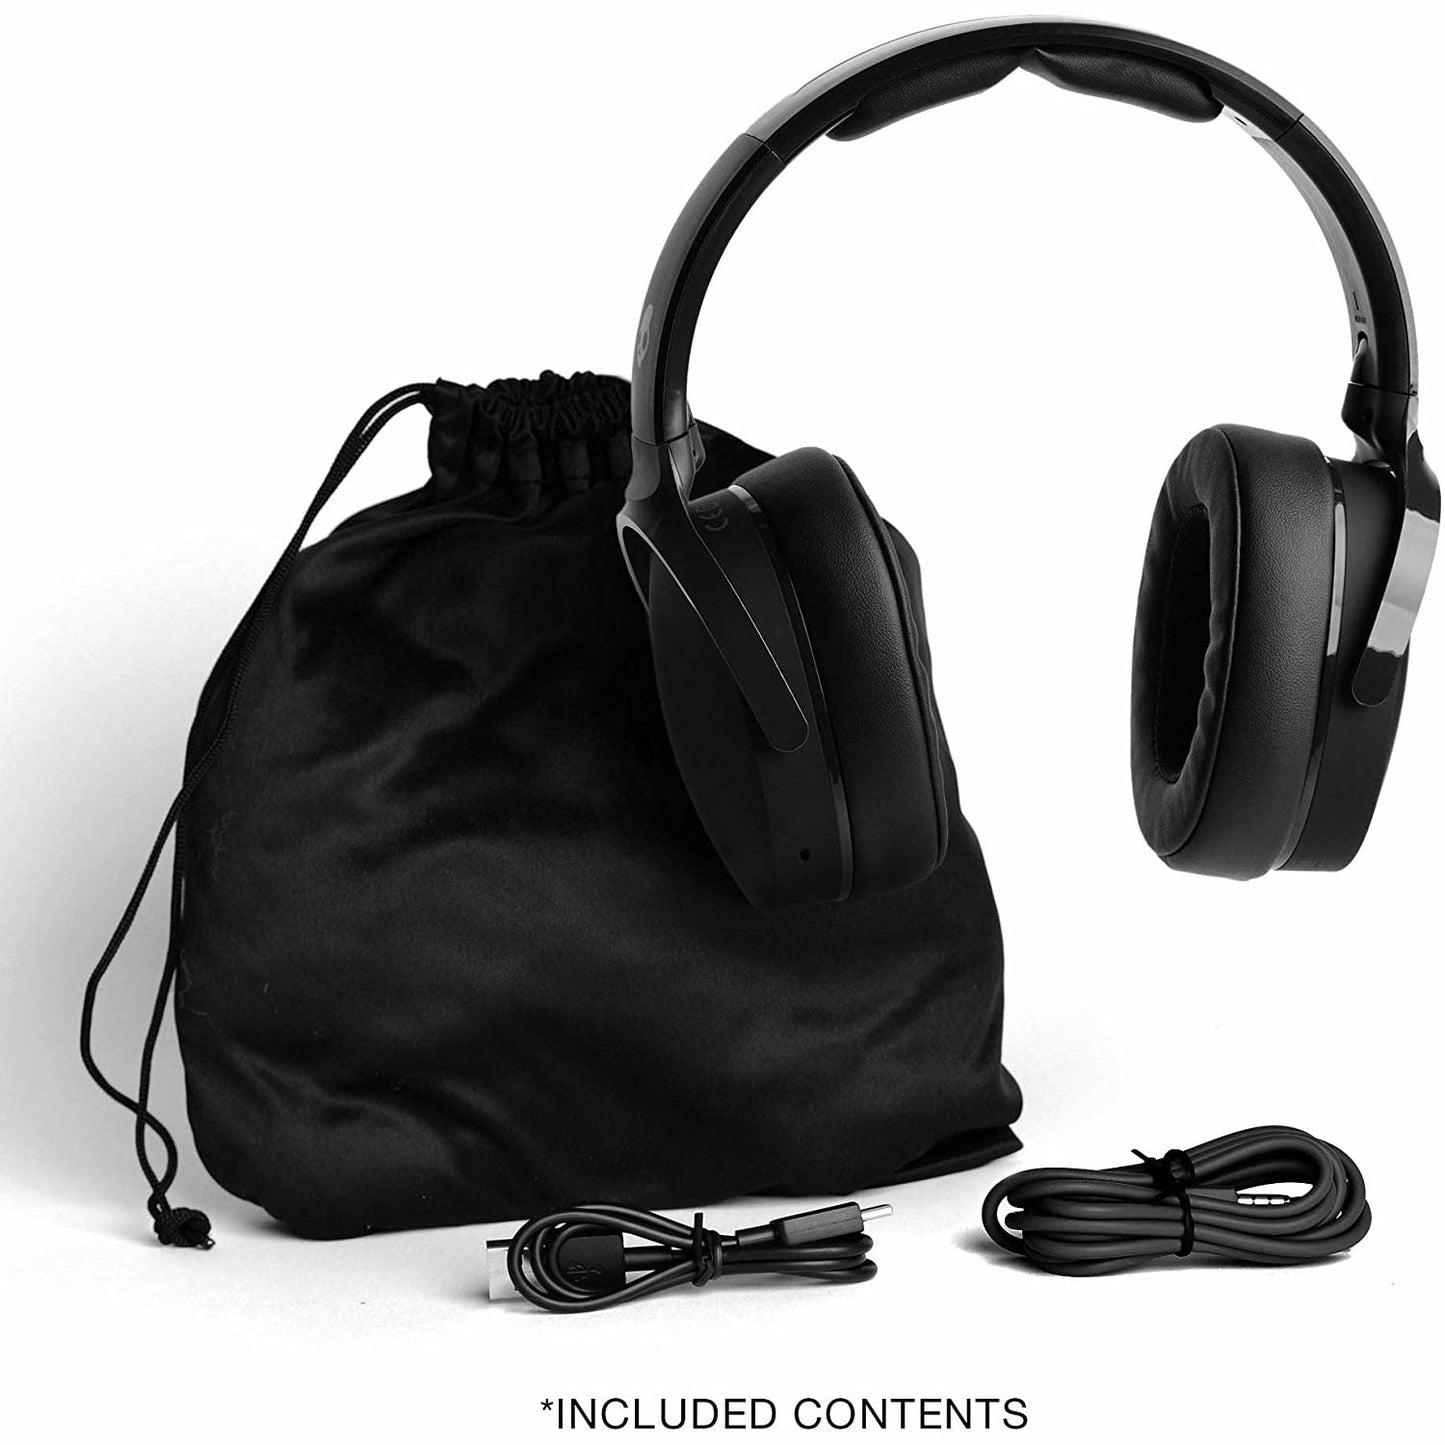 Skullcandy - Hesh Evo Wireless Over-Ear